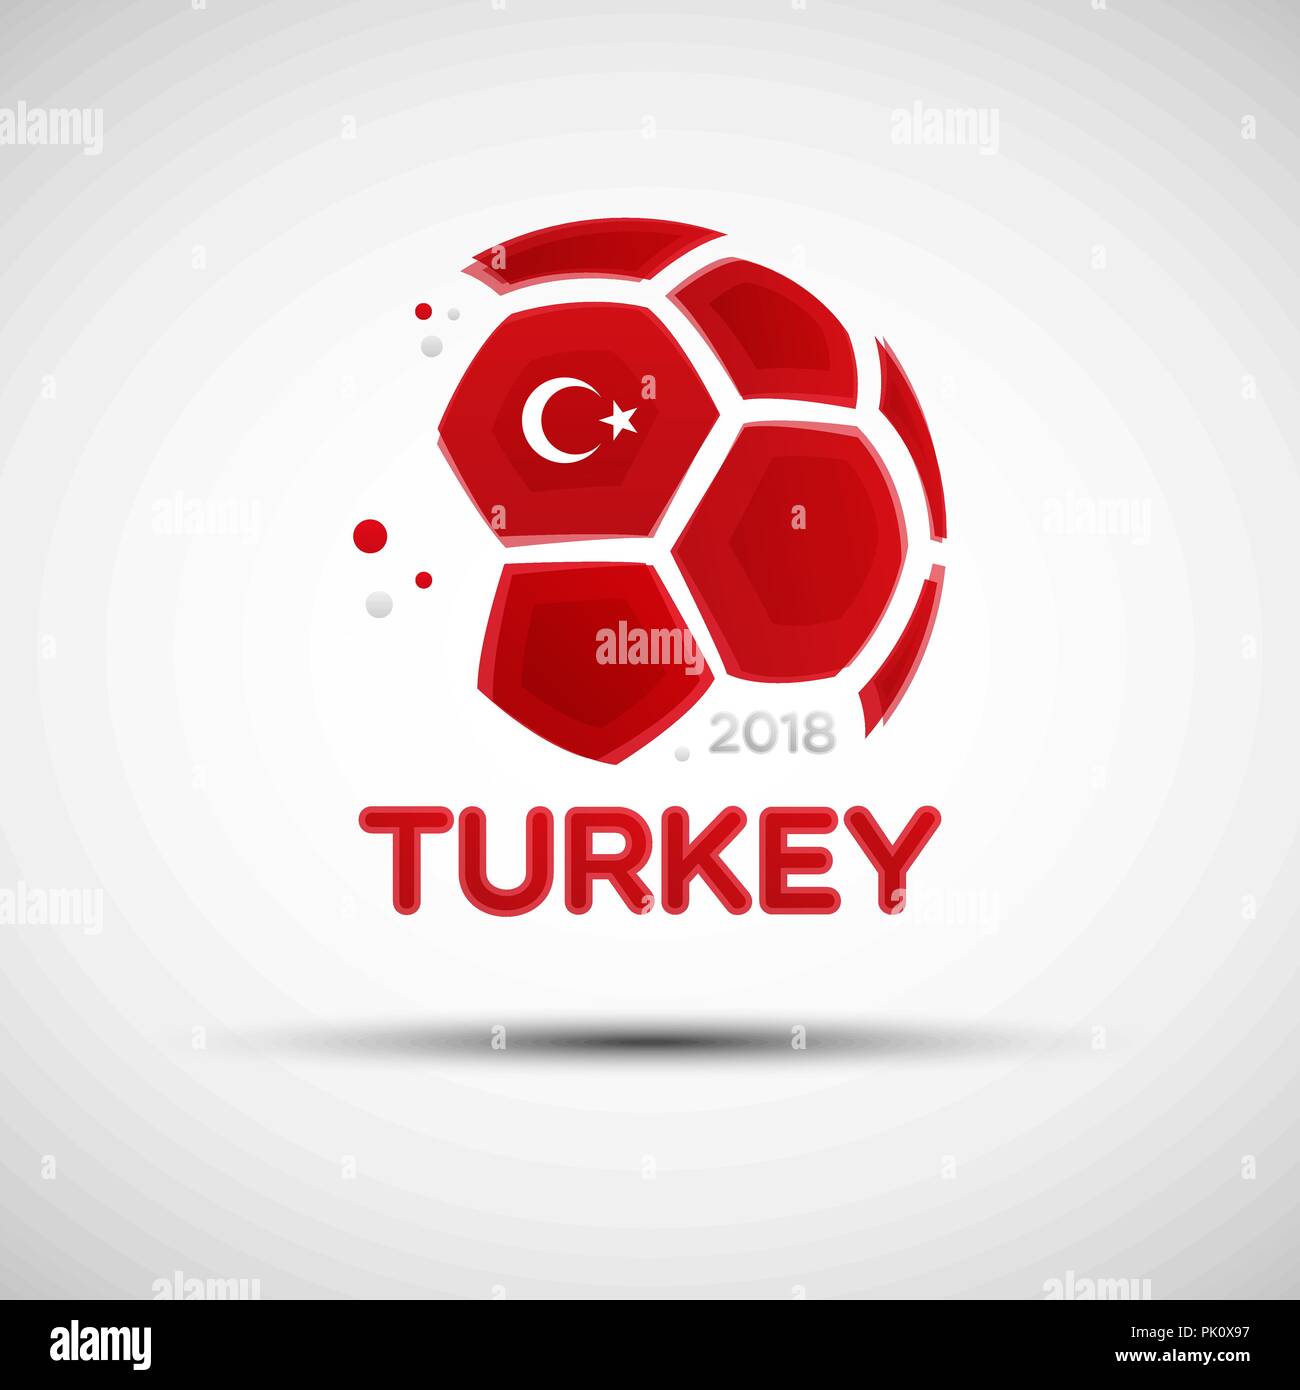 Fußball-Banner. Flagge der Türkei. Vector Illustration der abstrakten Fußball mit Türkischen nationalflagge Farben für Ihr Design Stock Vektor